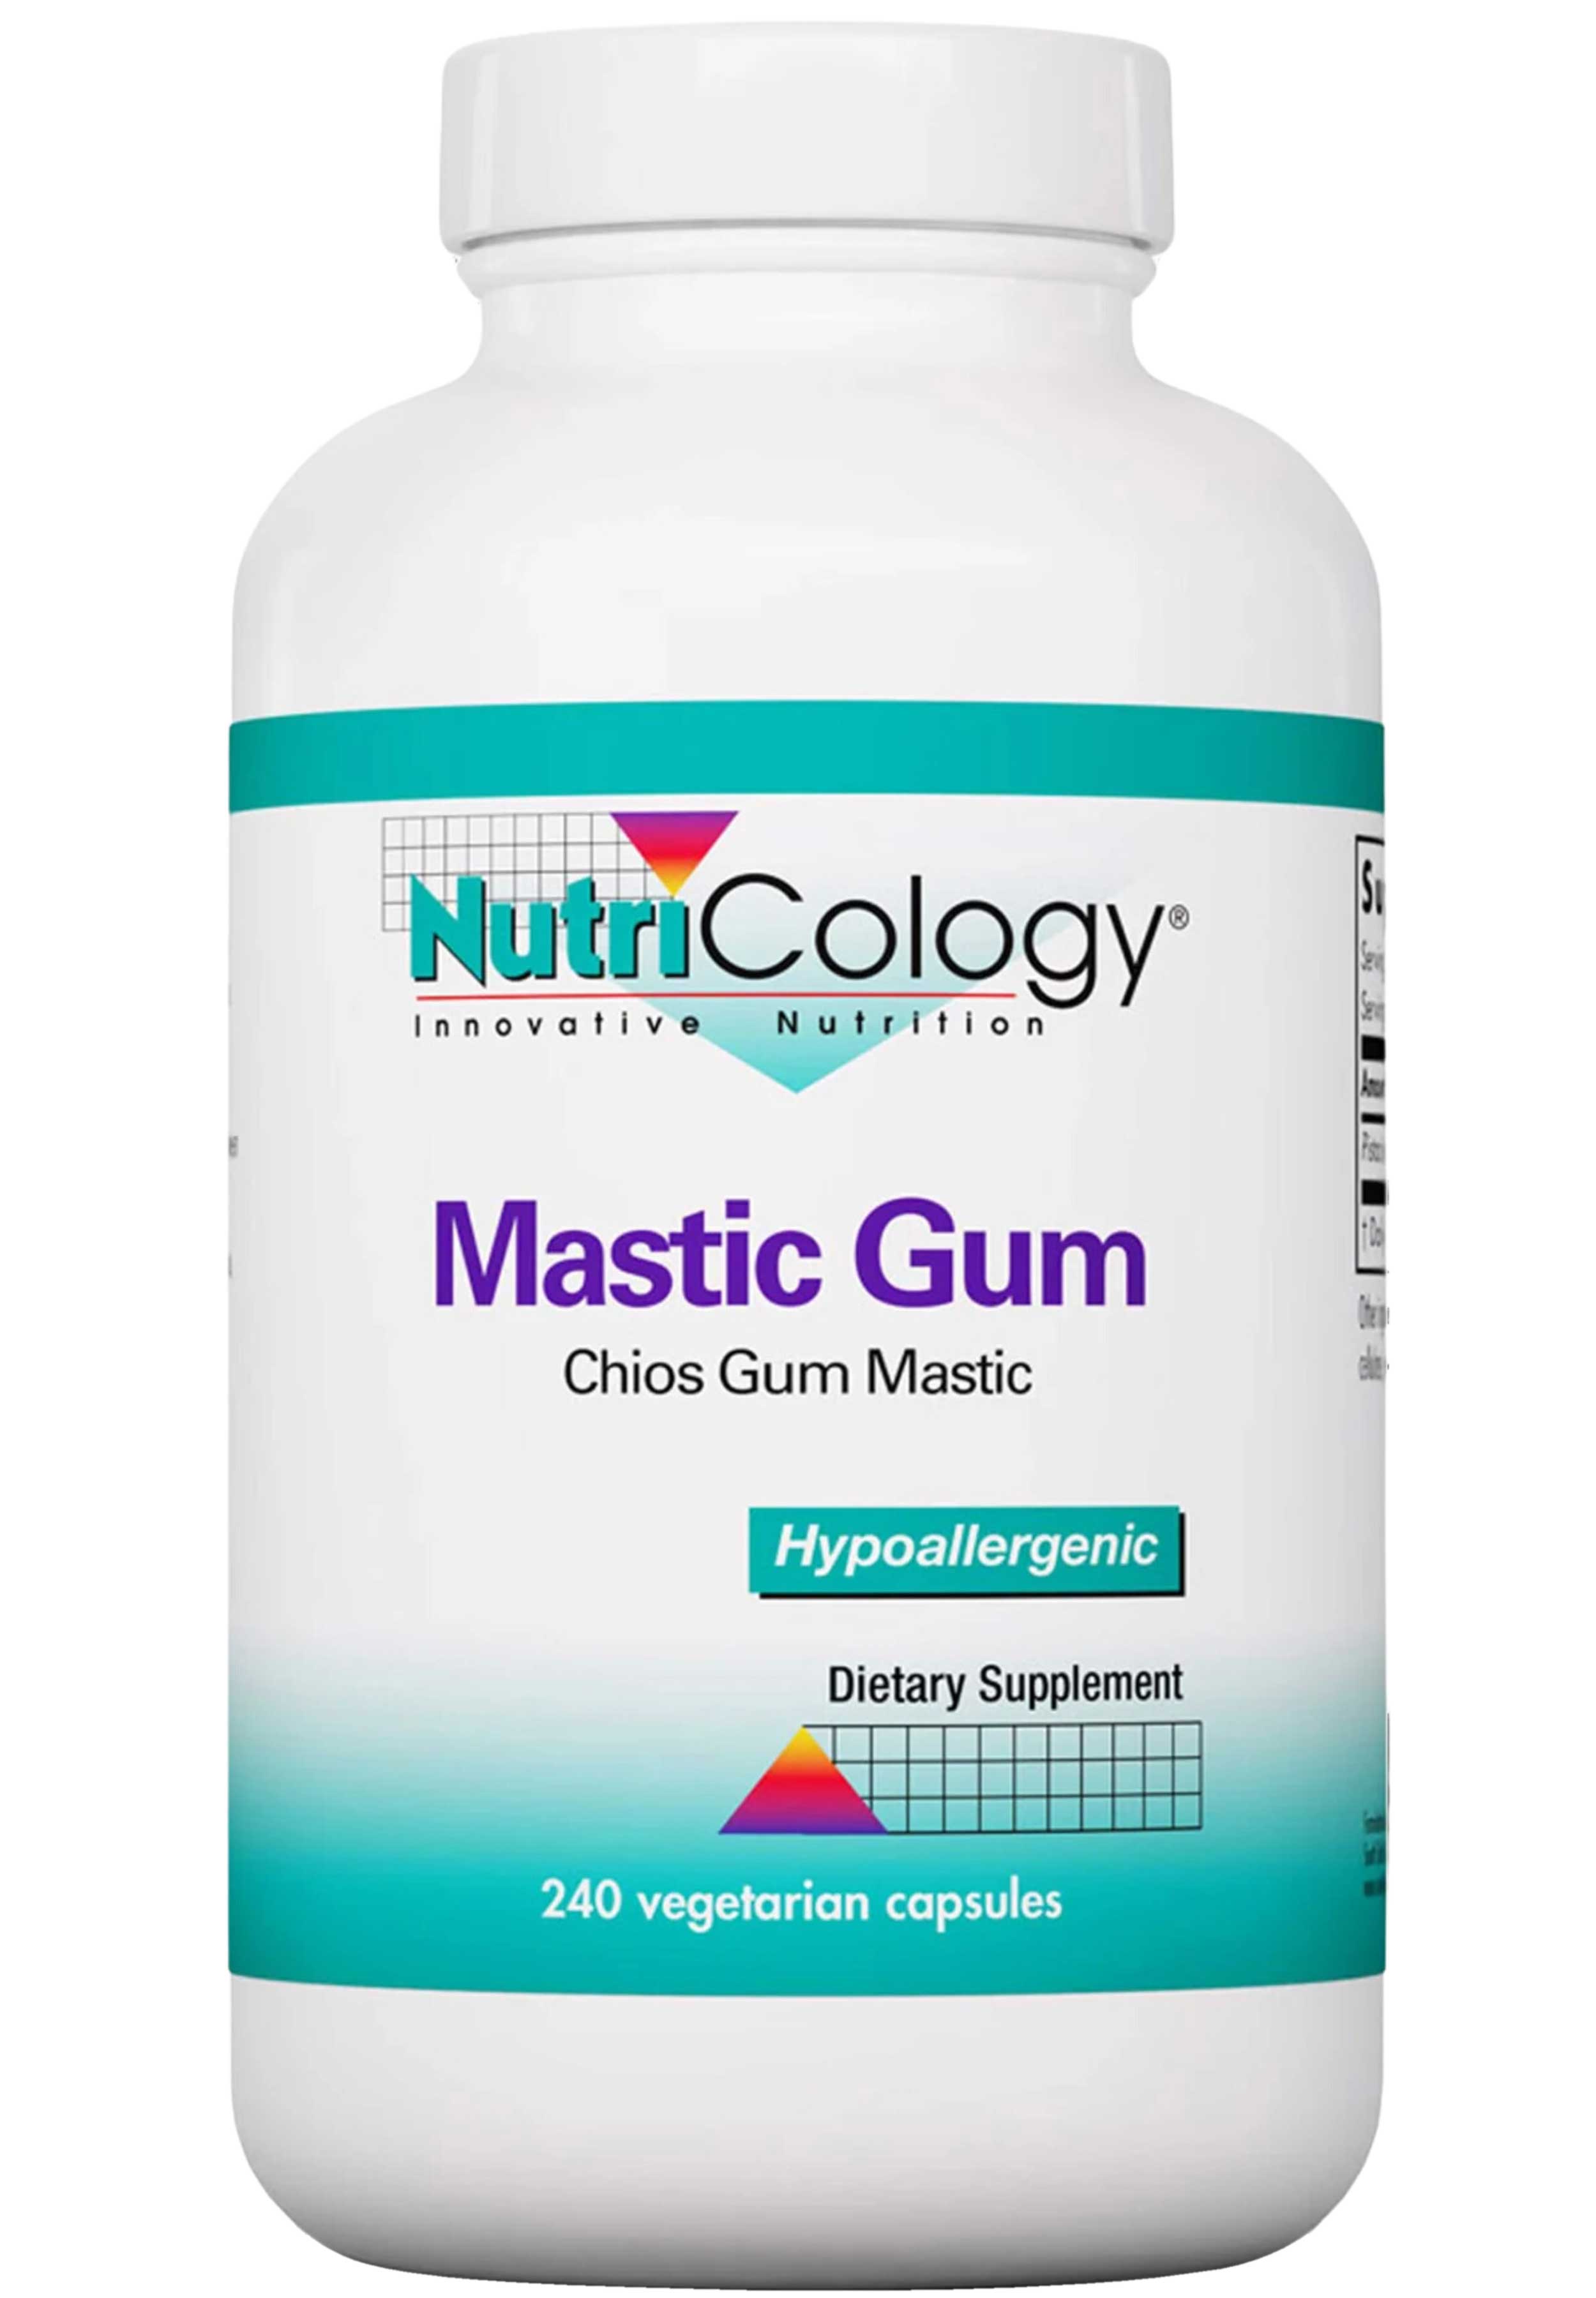 Nutricology Mastic Gum